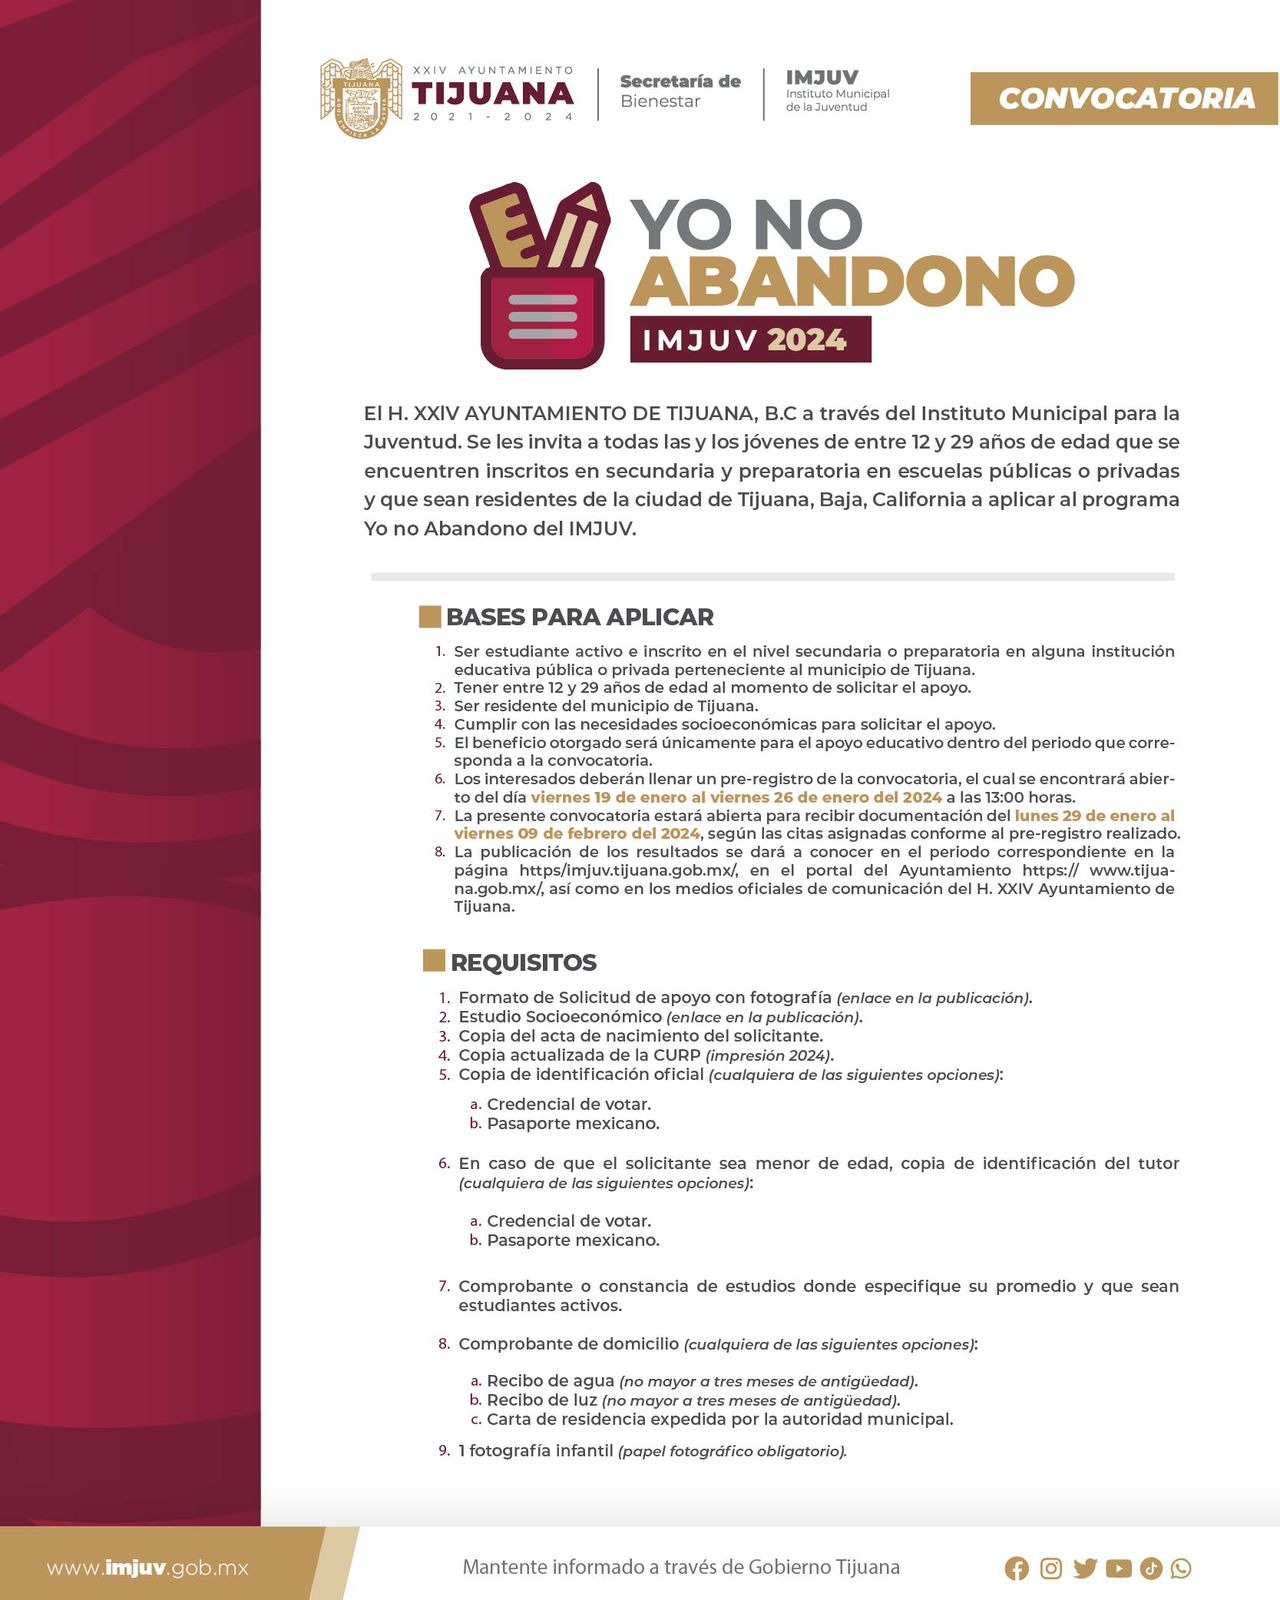 Ayuntamiento de Tijuana lanza convocatoria para el programa “Yo No Abandono”